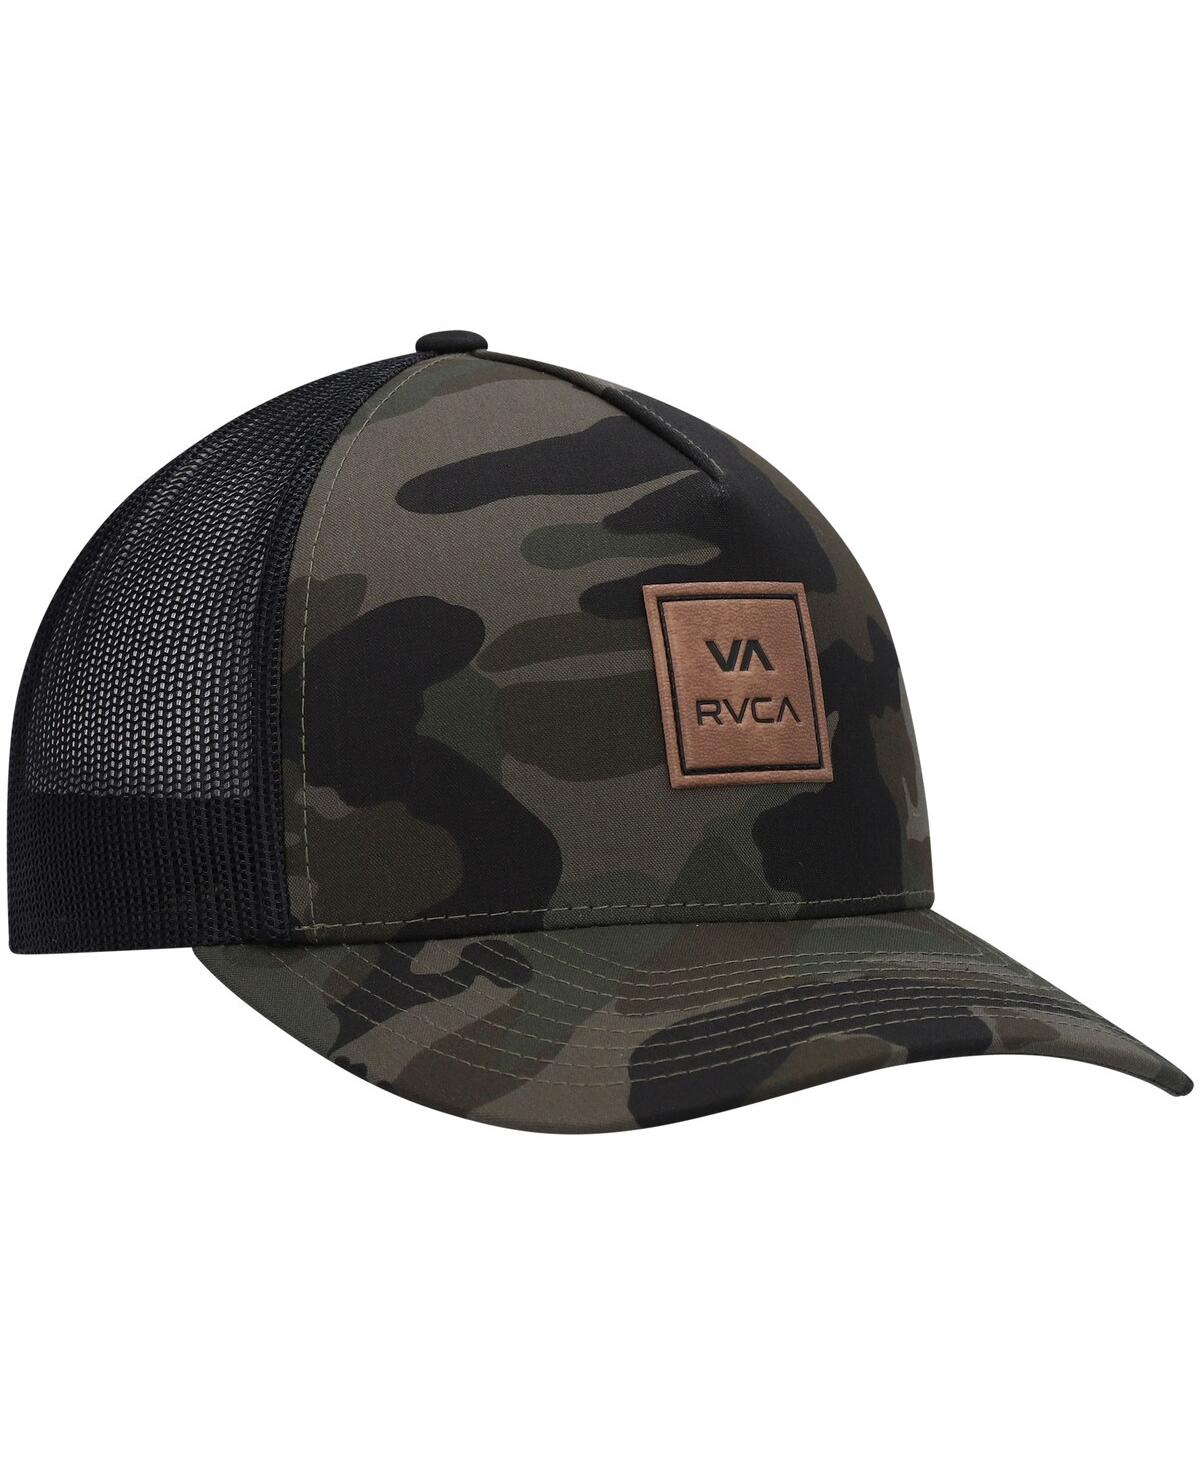 Shop Rvca Men's  Camo Va All The Way Trucker Snapback Hat